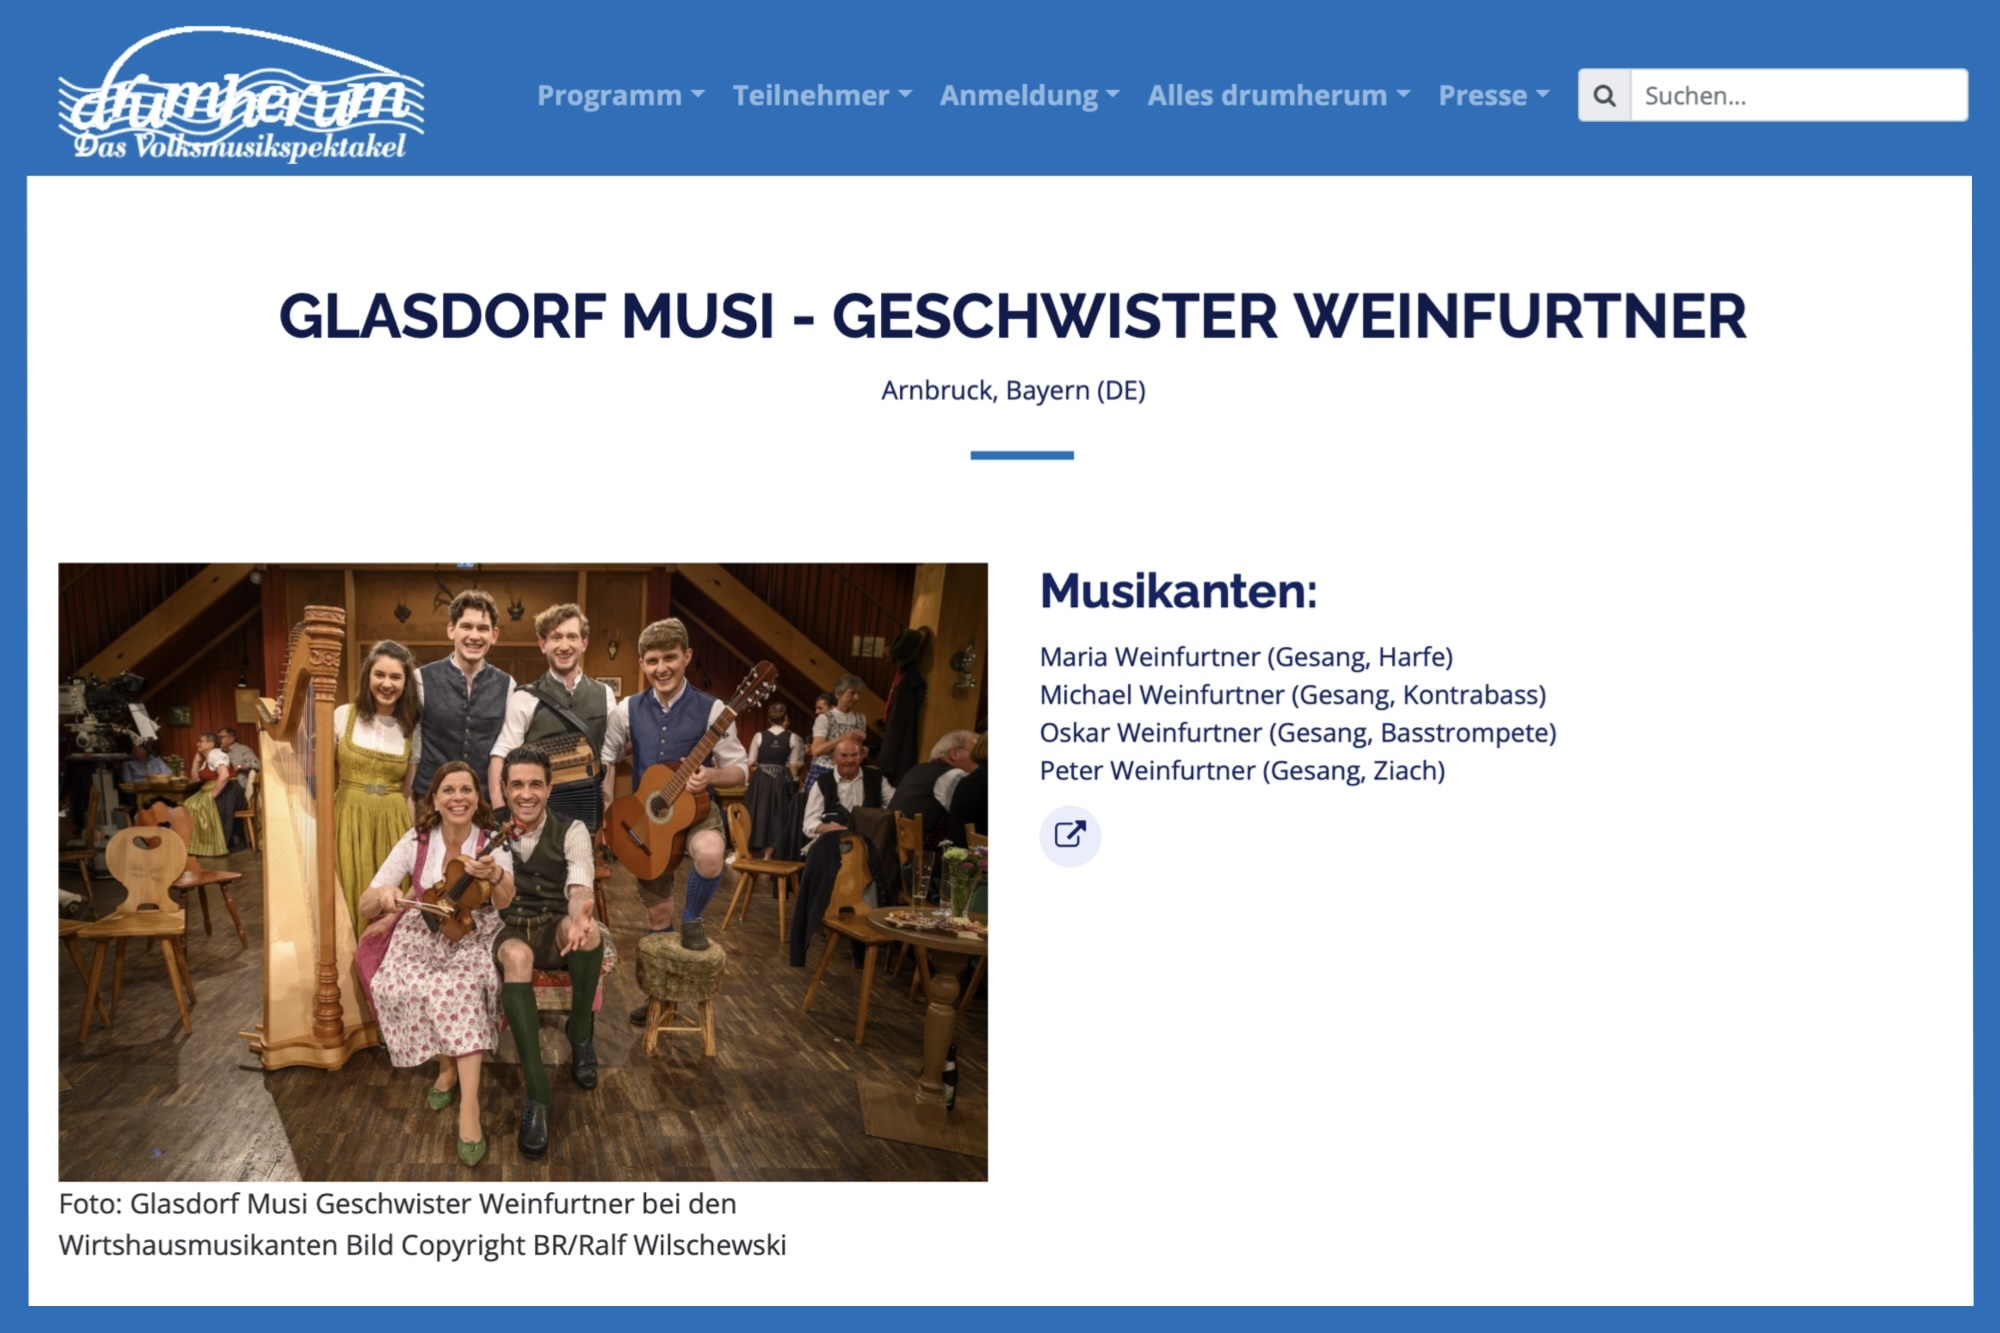 Glasdorf Musi Geschwister Weinfurtner beim Drumherum 2024 in Regen